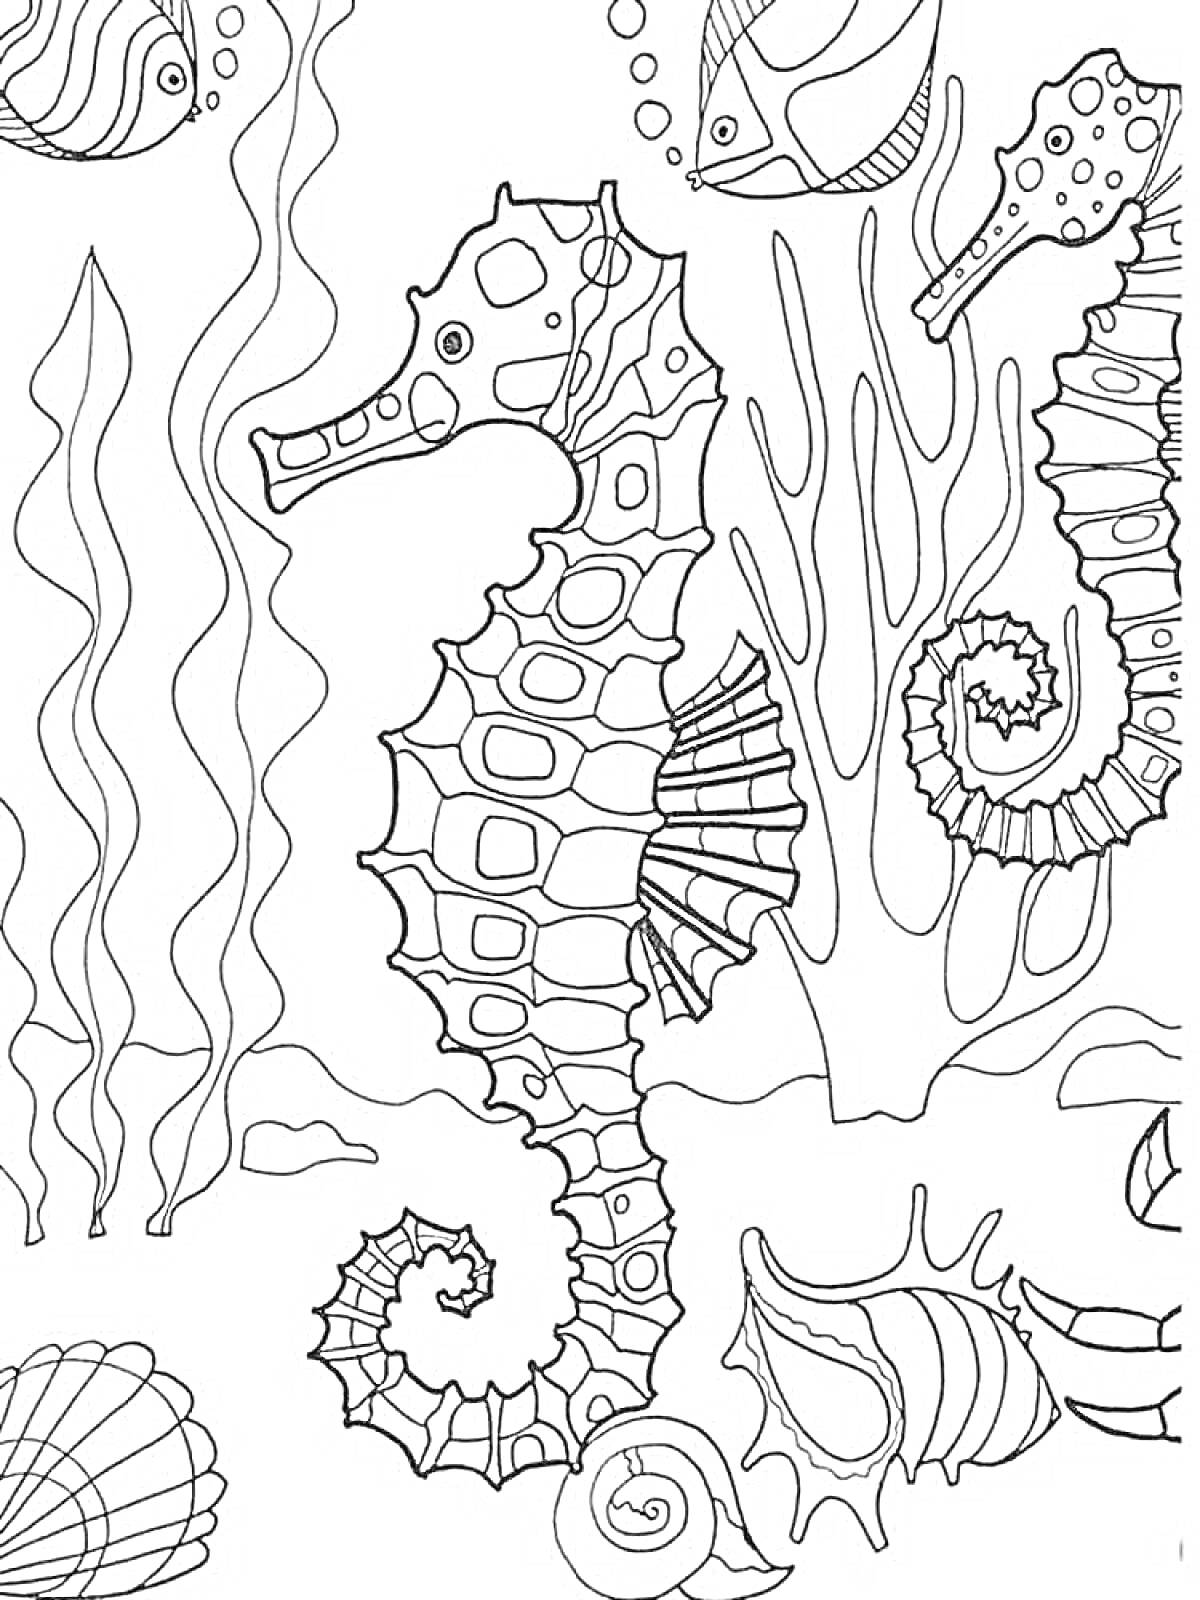 Раскраска Морской конек, кораллы, рыбы и ракушки